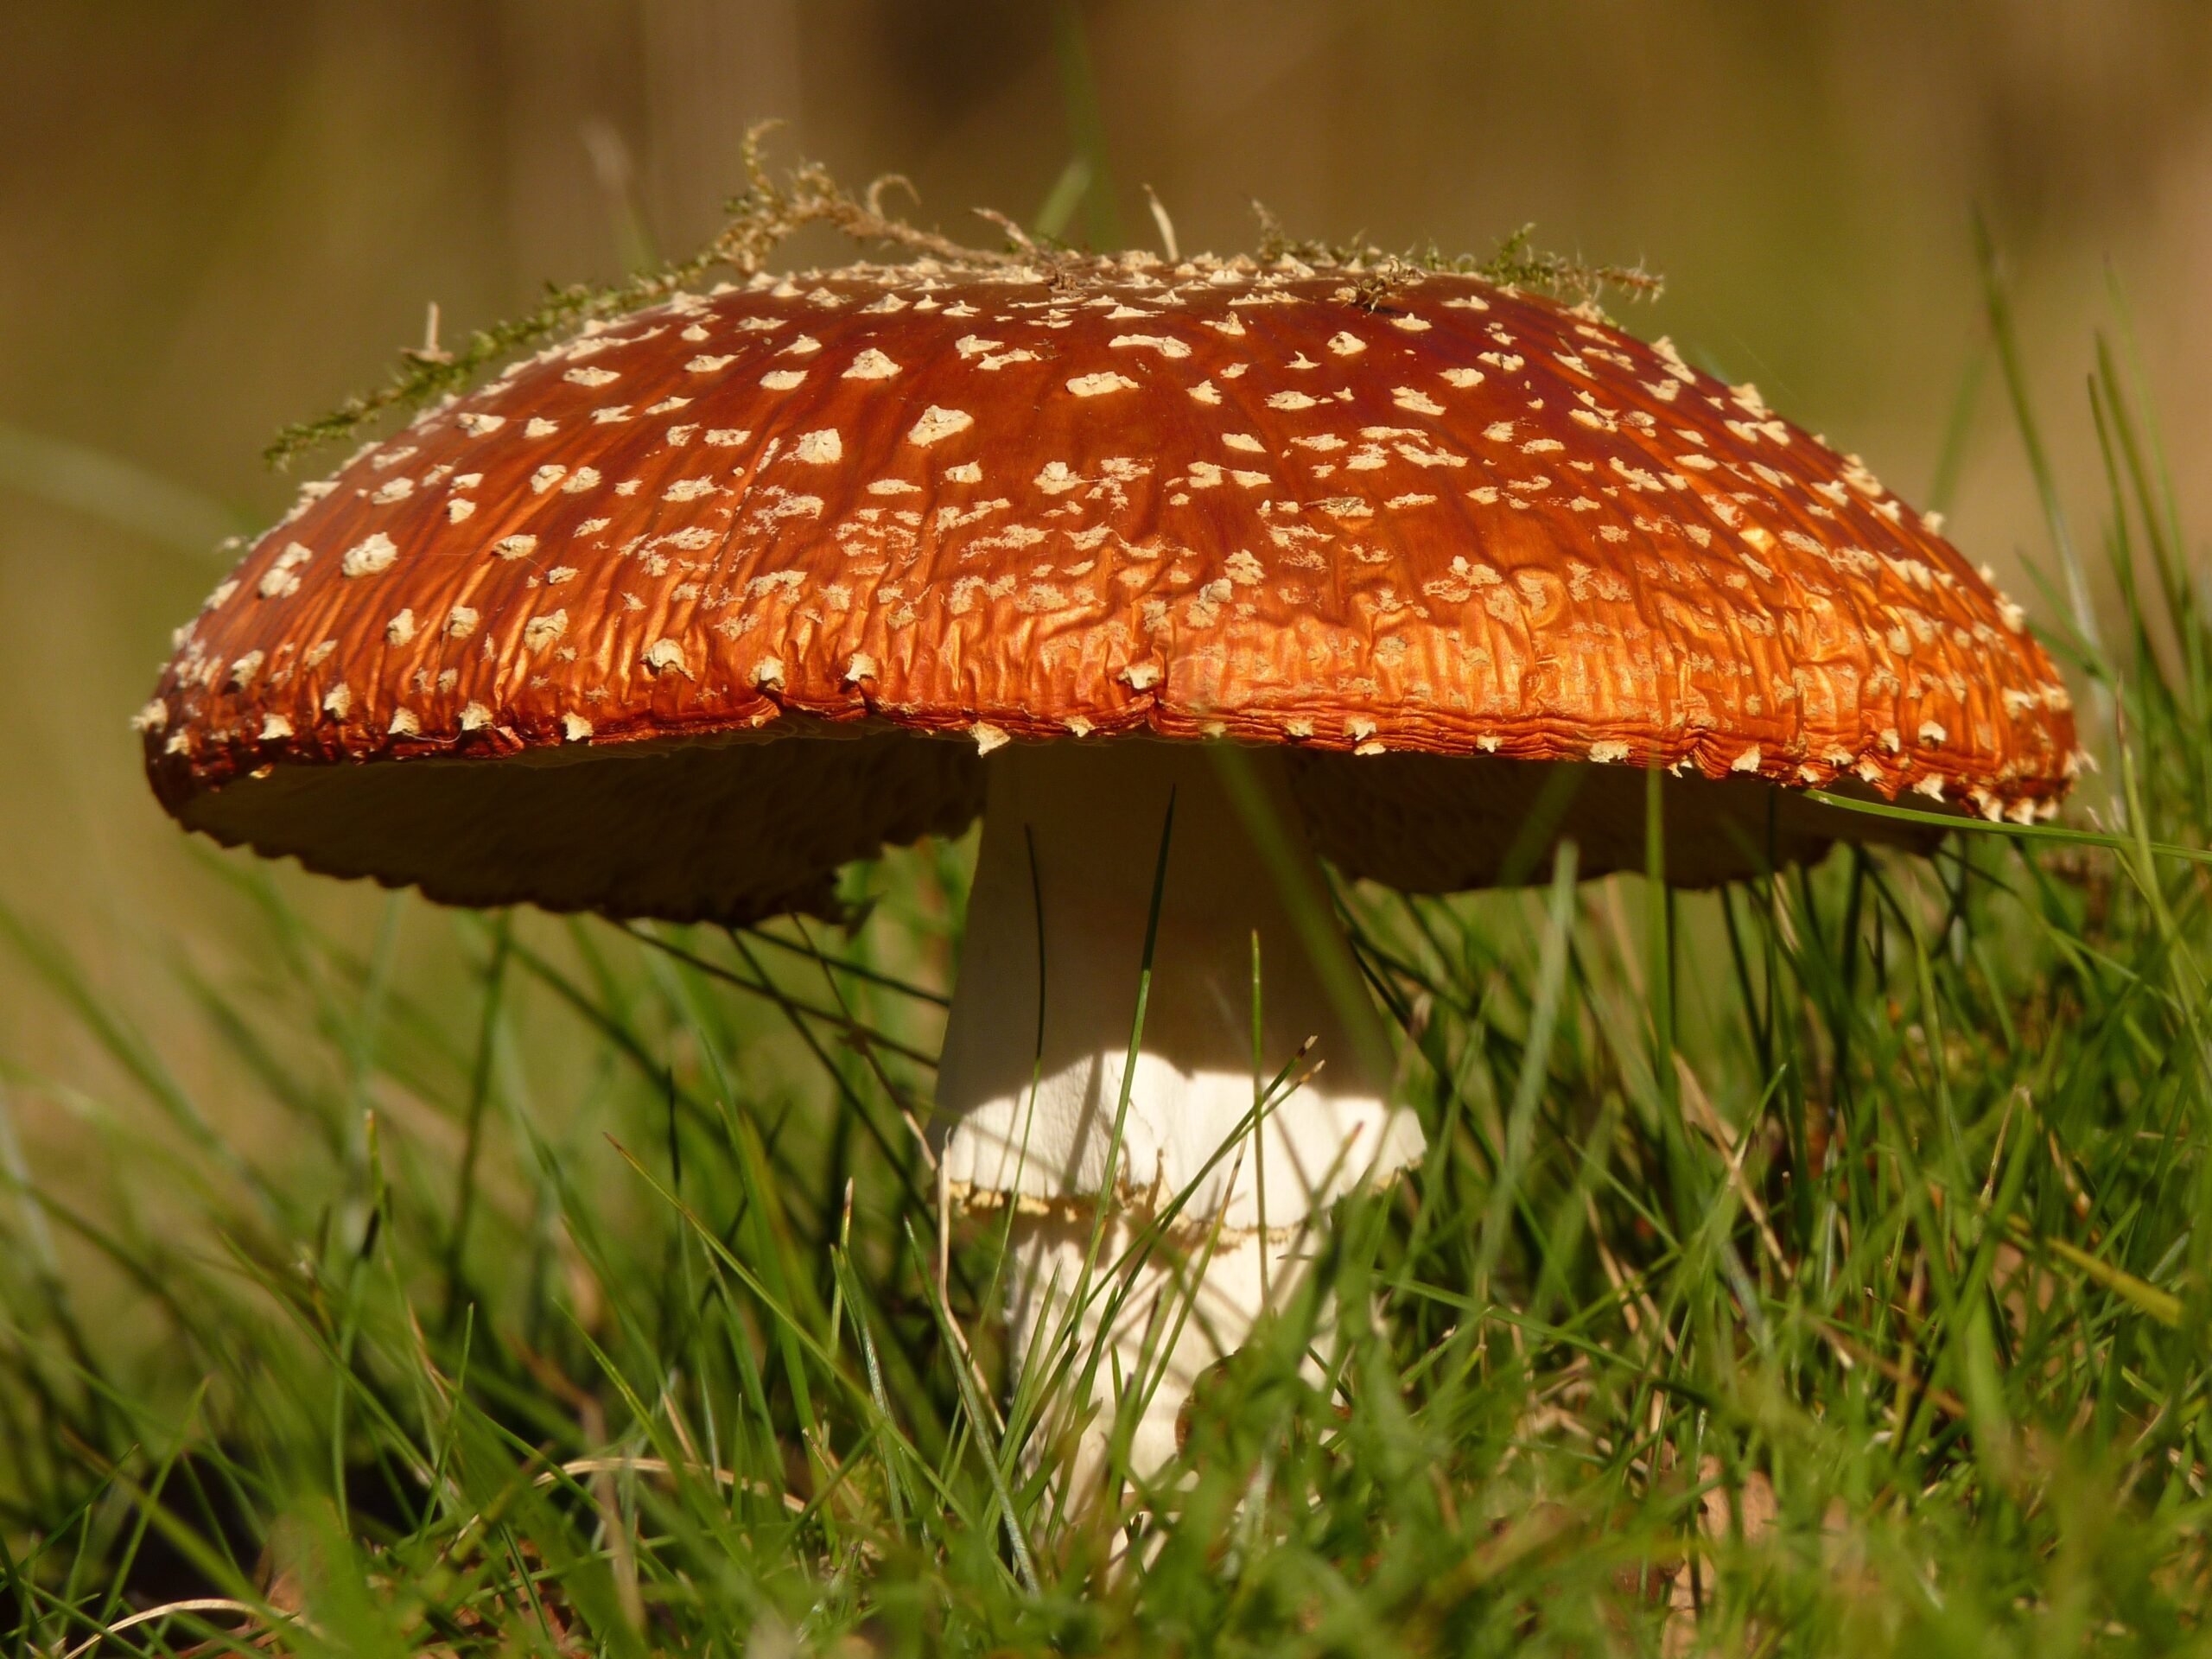 Ярко-оранжевый гриб необычной формы был найден жительницей карельского поселка